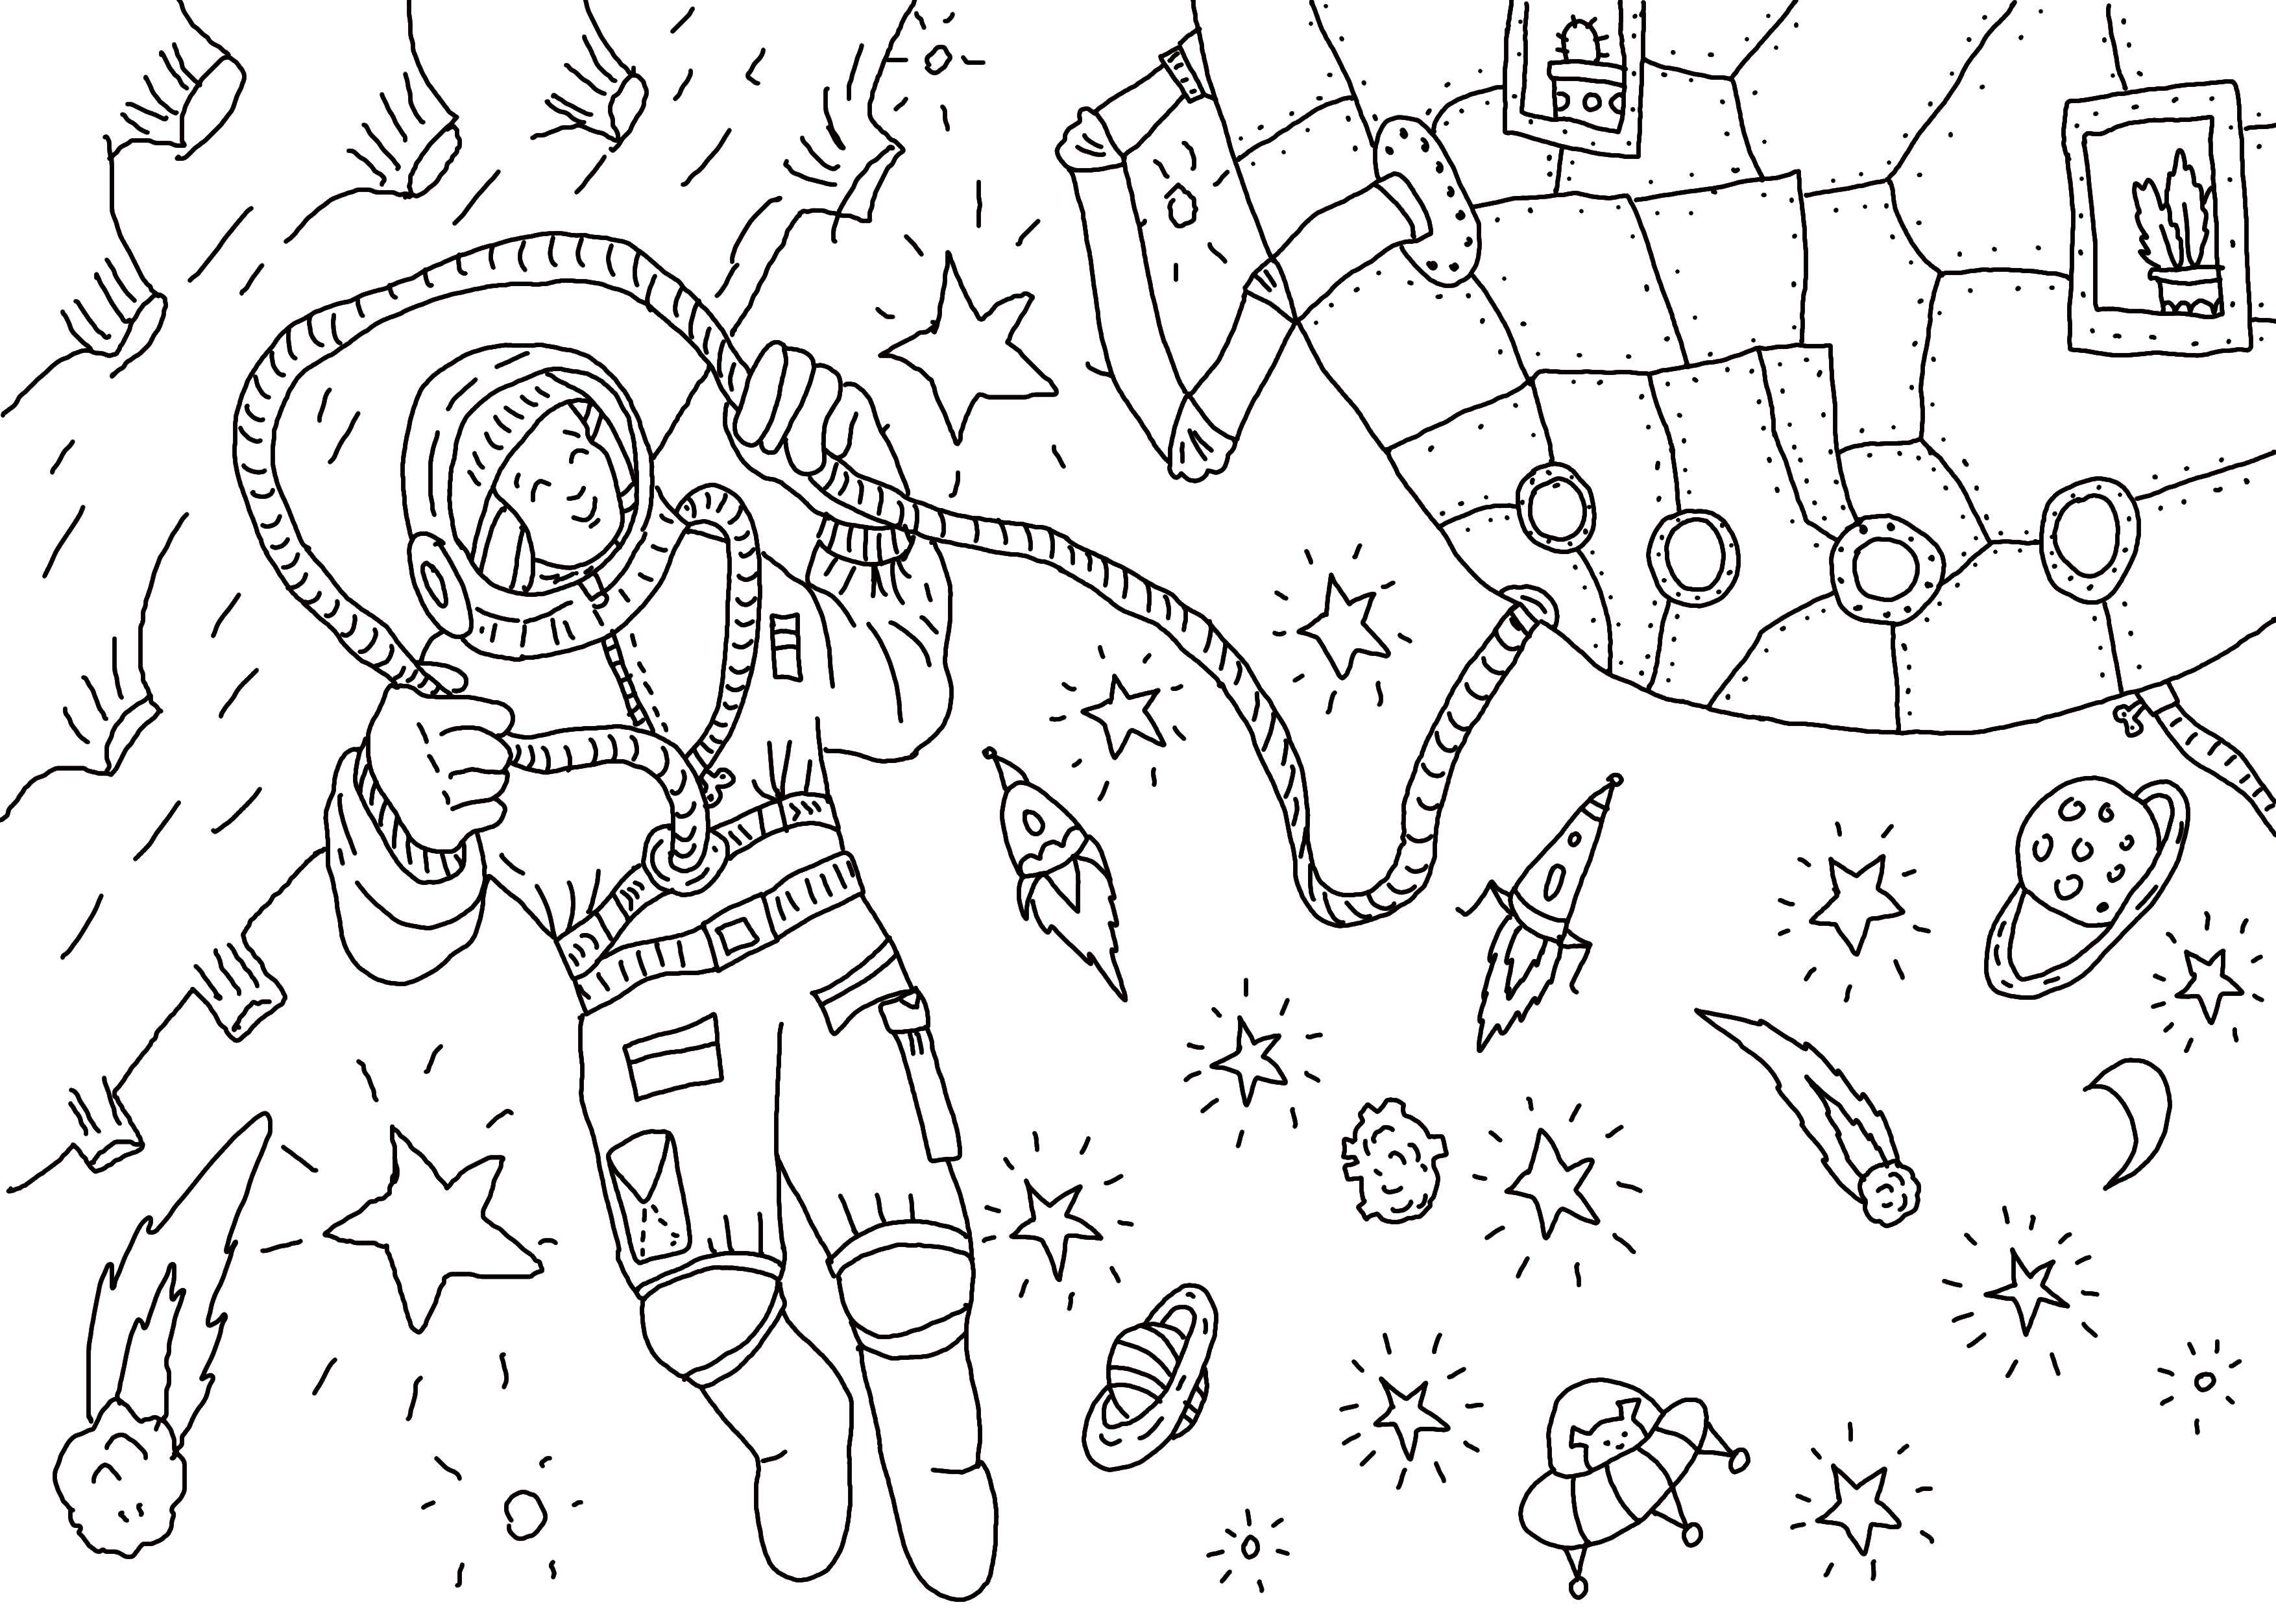 Рисунок ко дню космонавтики черно белый